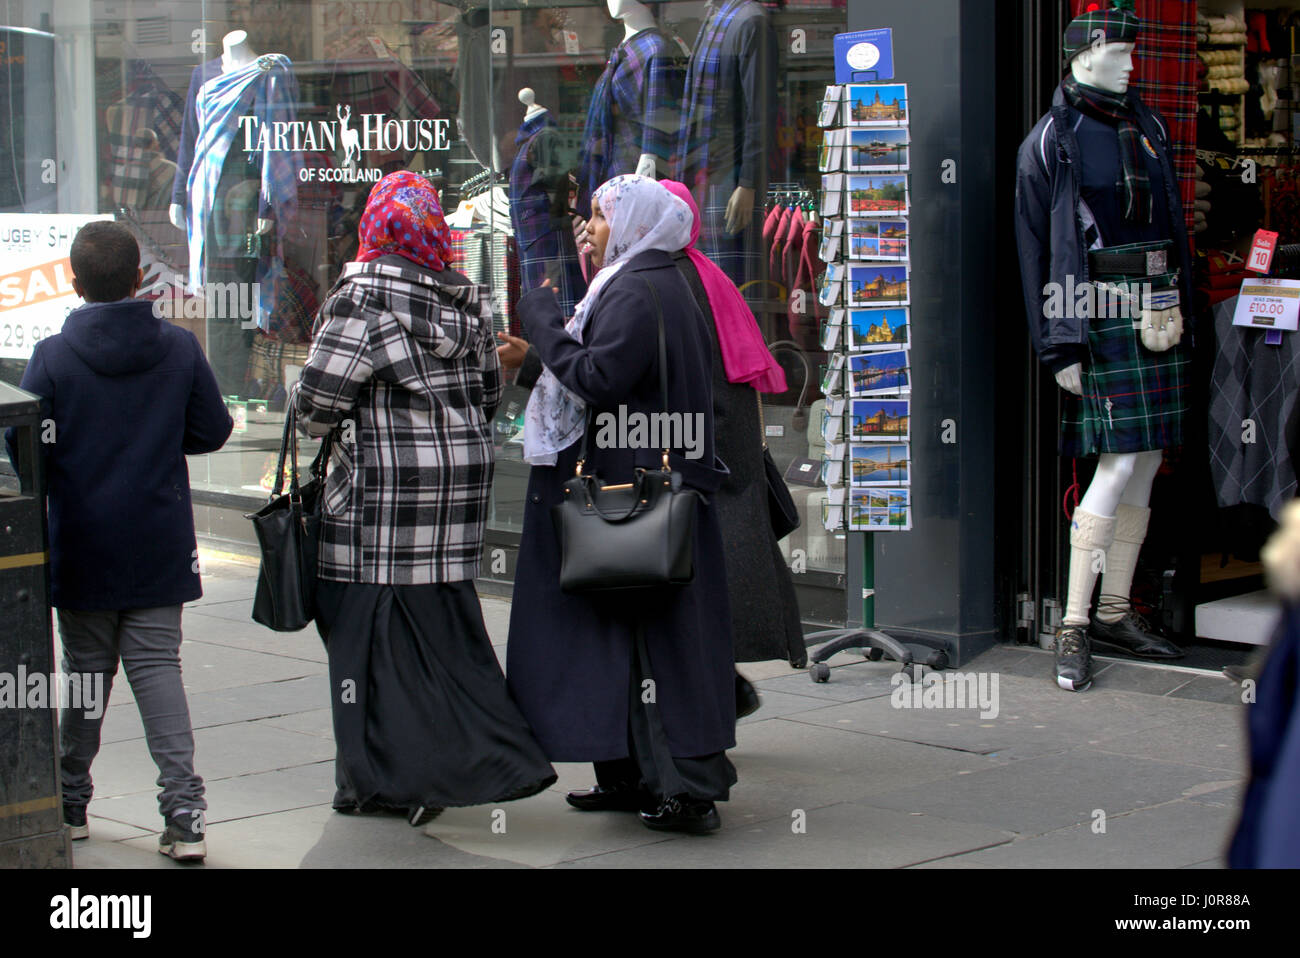 Des réfugiés africains asiatiques habillés Hijab foulard sur street au Royaume-Uni scène quotidienne family walking in foule avec Scottish Tartan memorabilia atound Banque D'Images